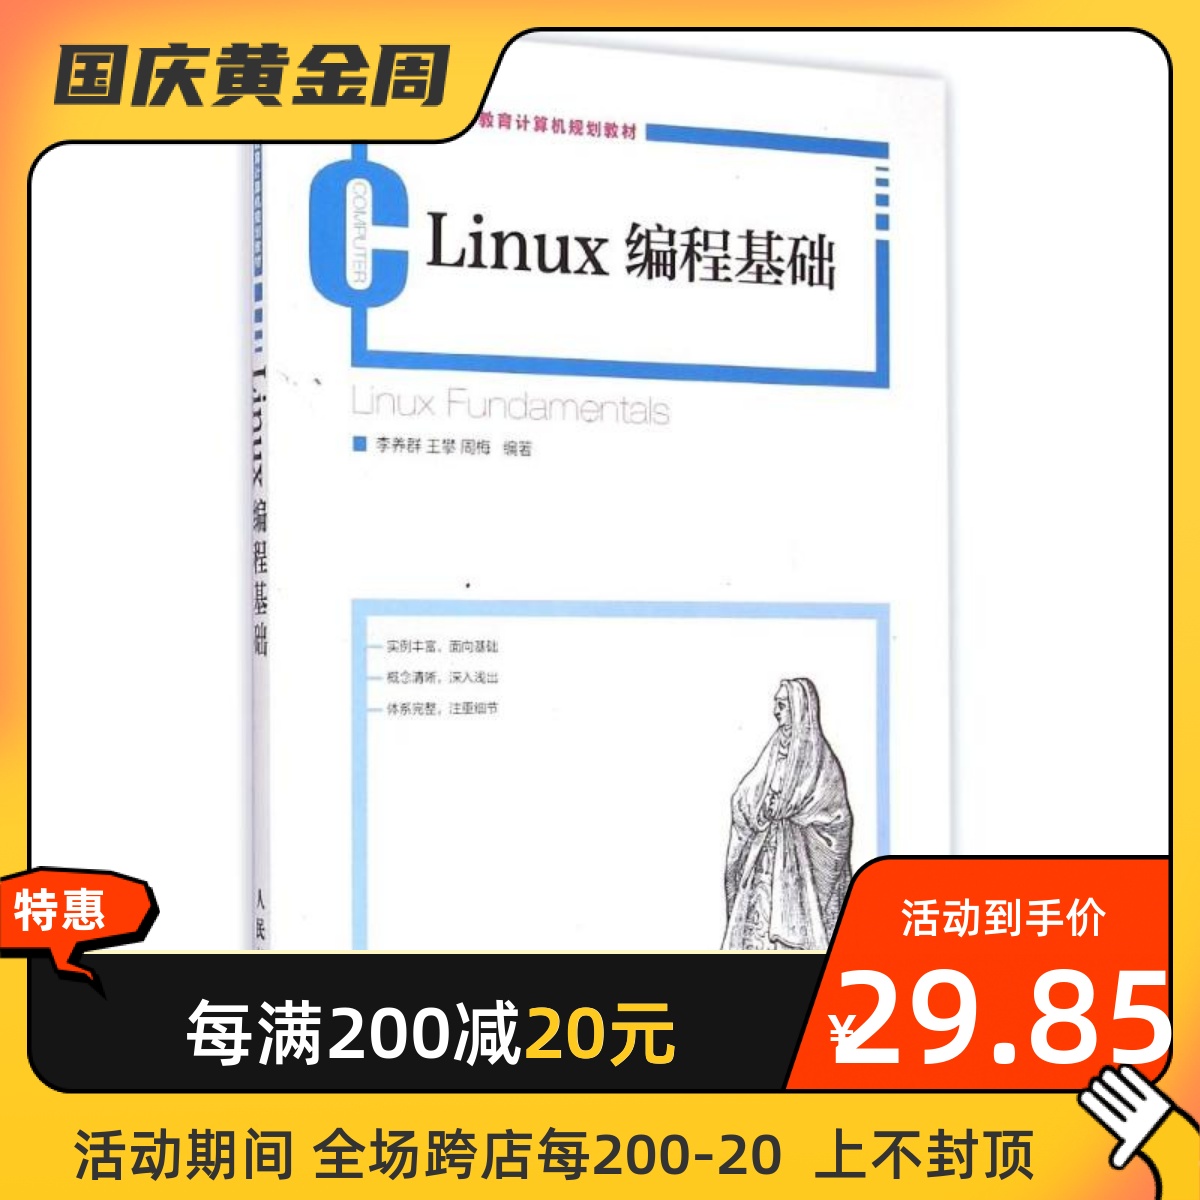 Linux编程基础(21世纪高等教育计算机规划教材) 人民邮电出版社 李养群//王攀//周梅 著作